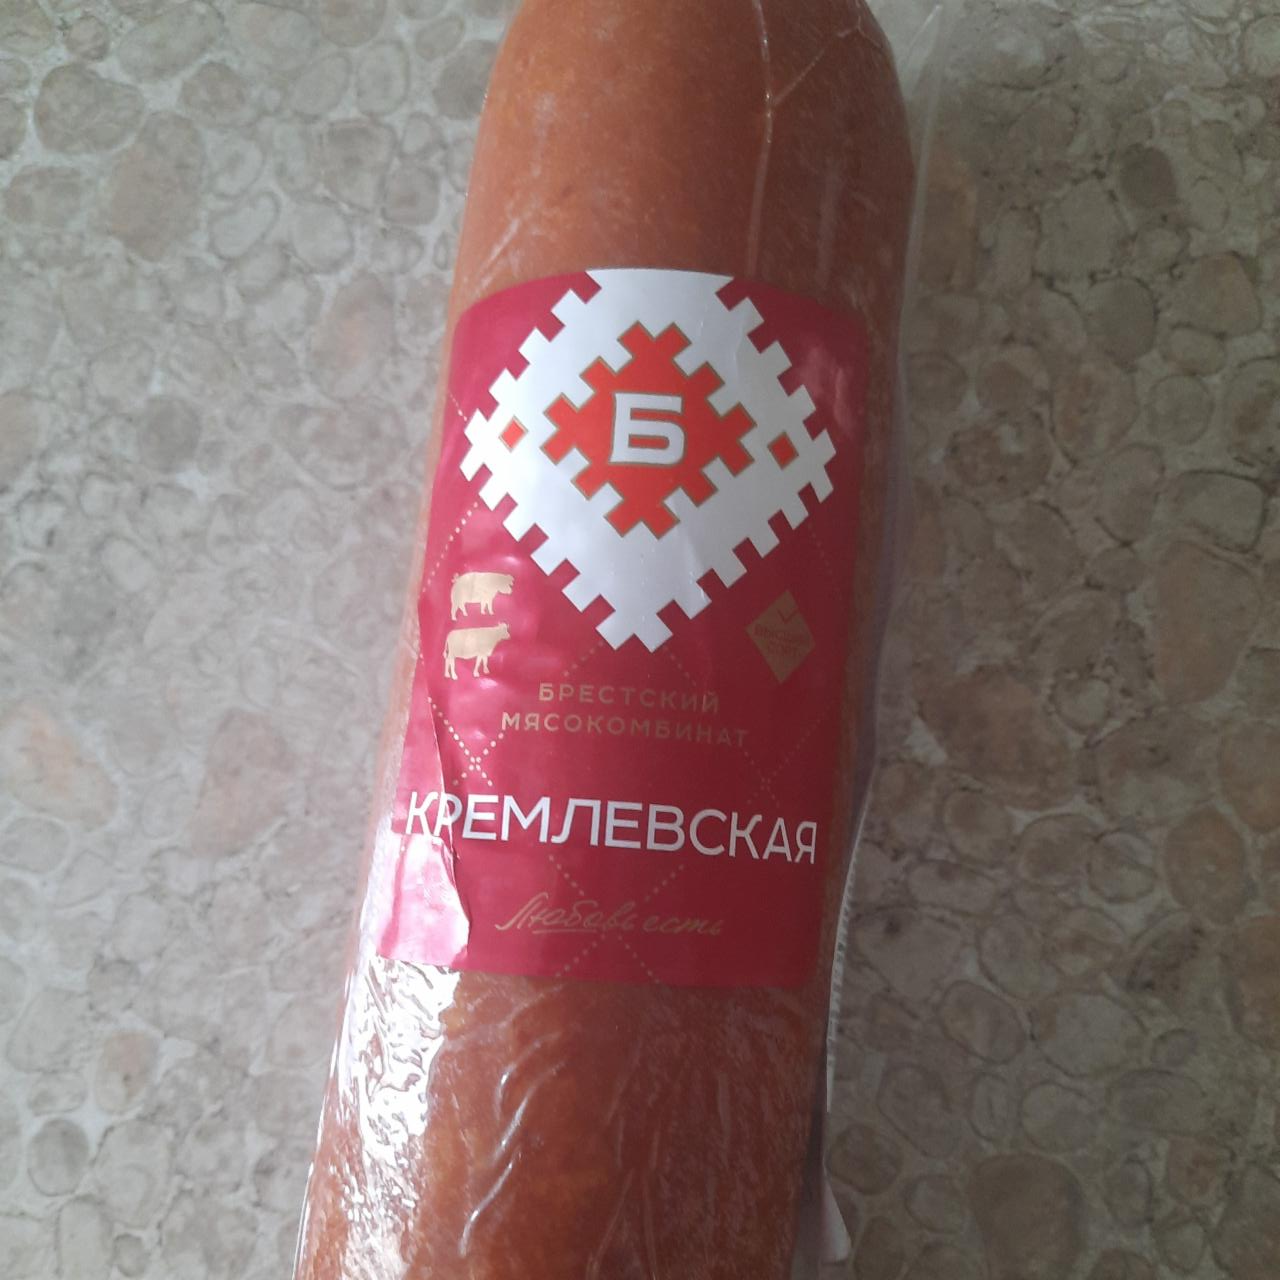 Фото - колбаса варено-копчёная Кремлевская Брестский мясокомбинат